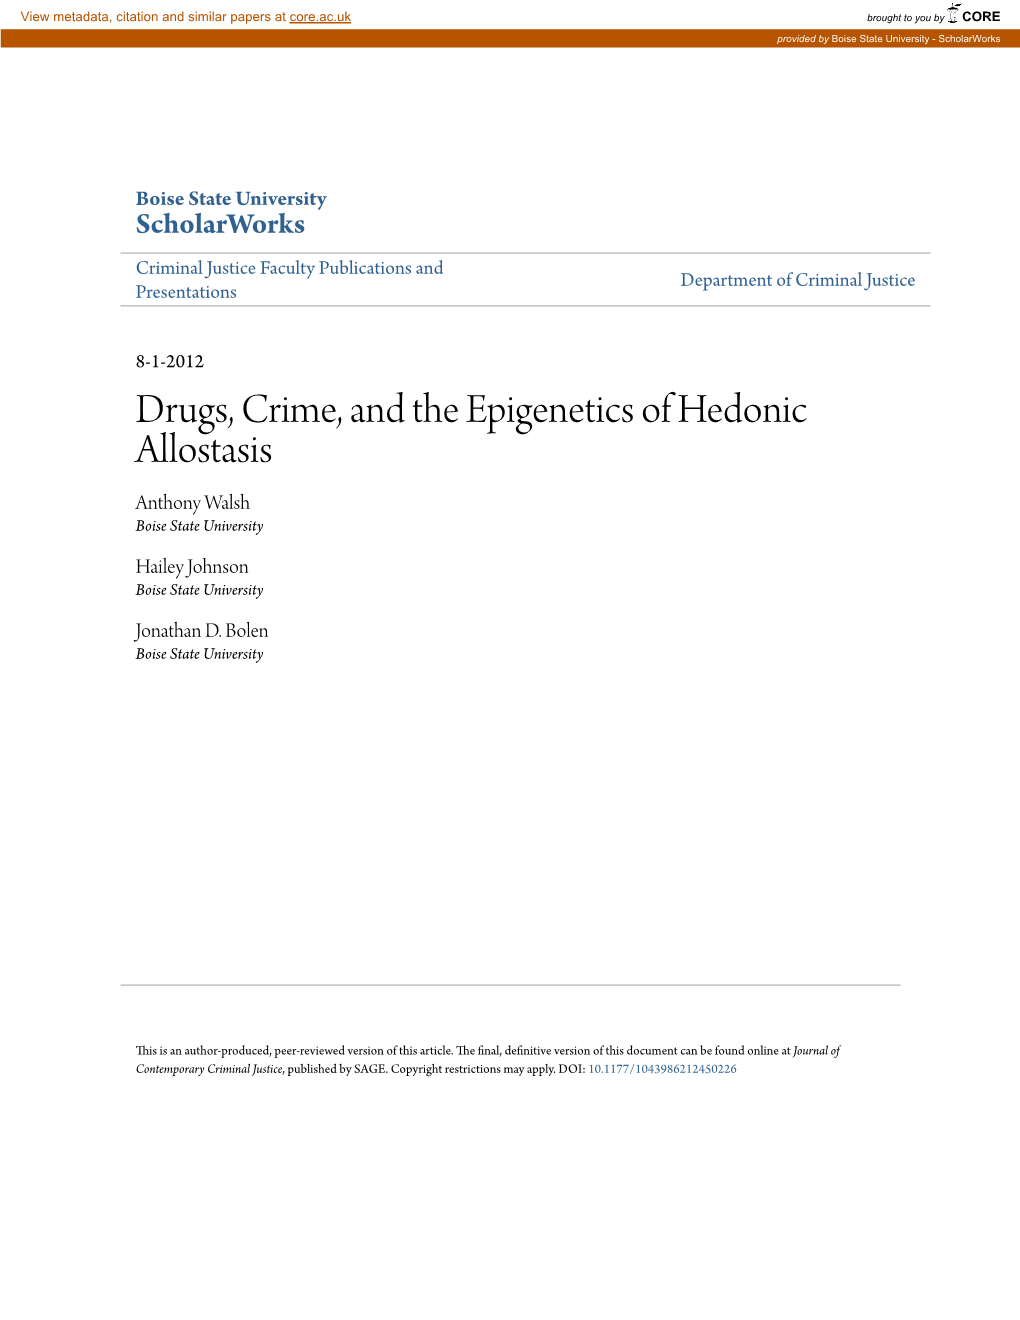 Drugs, Crime, and the Epigenetics of Hedonic Allostasis Anthony Walsh Boise State University